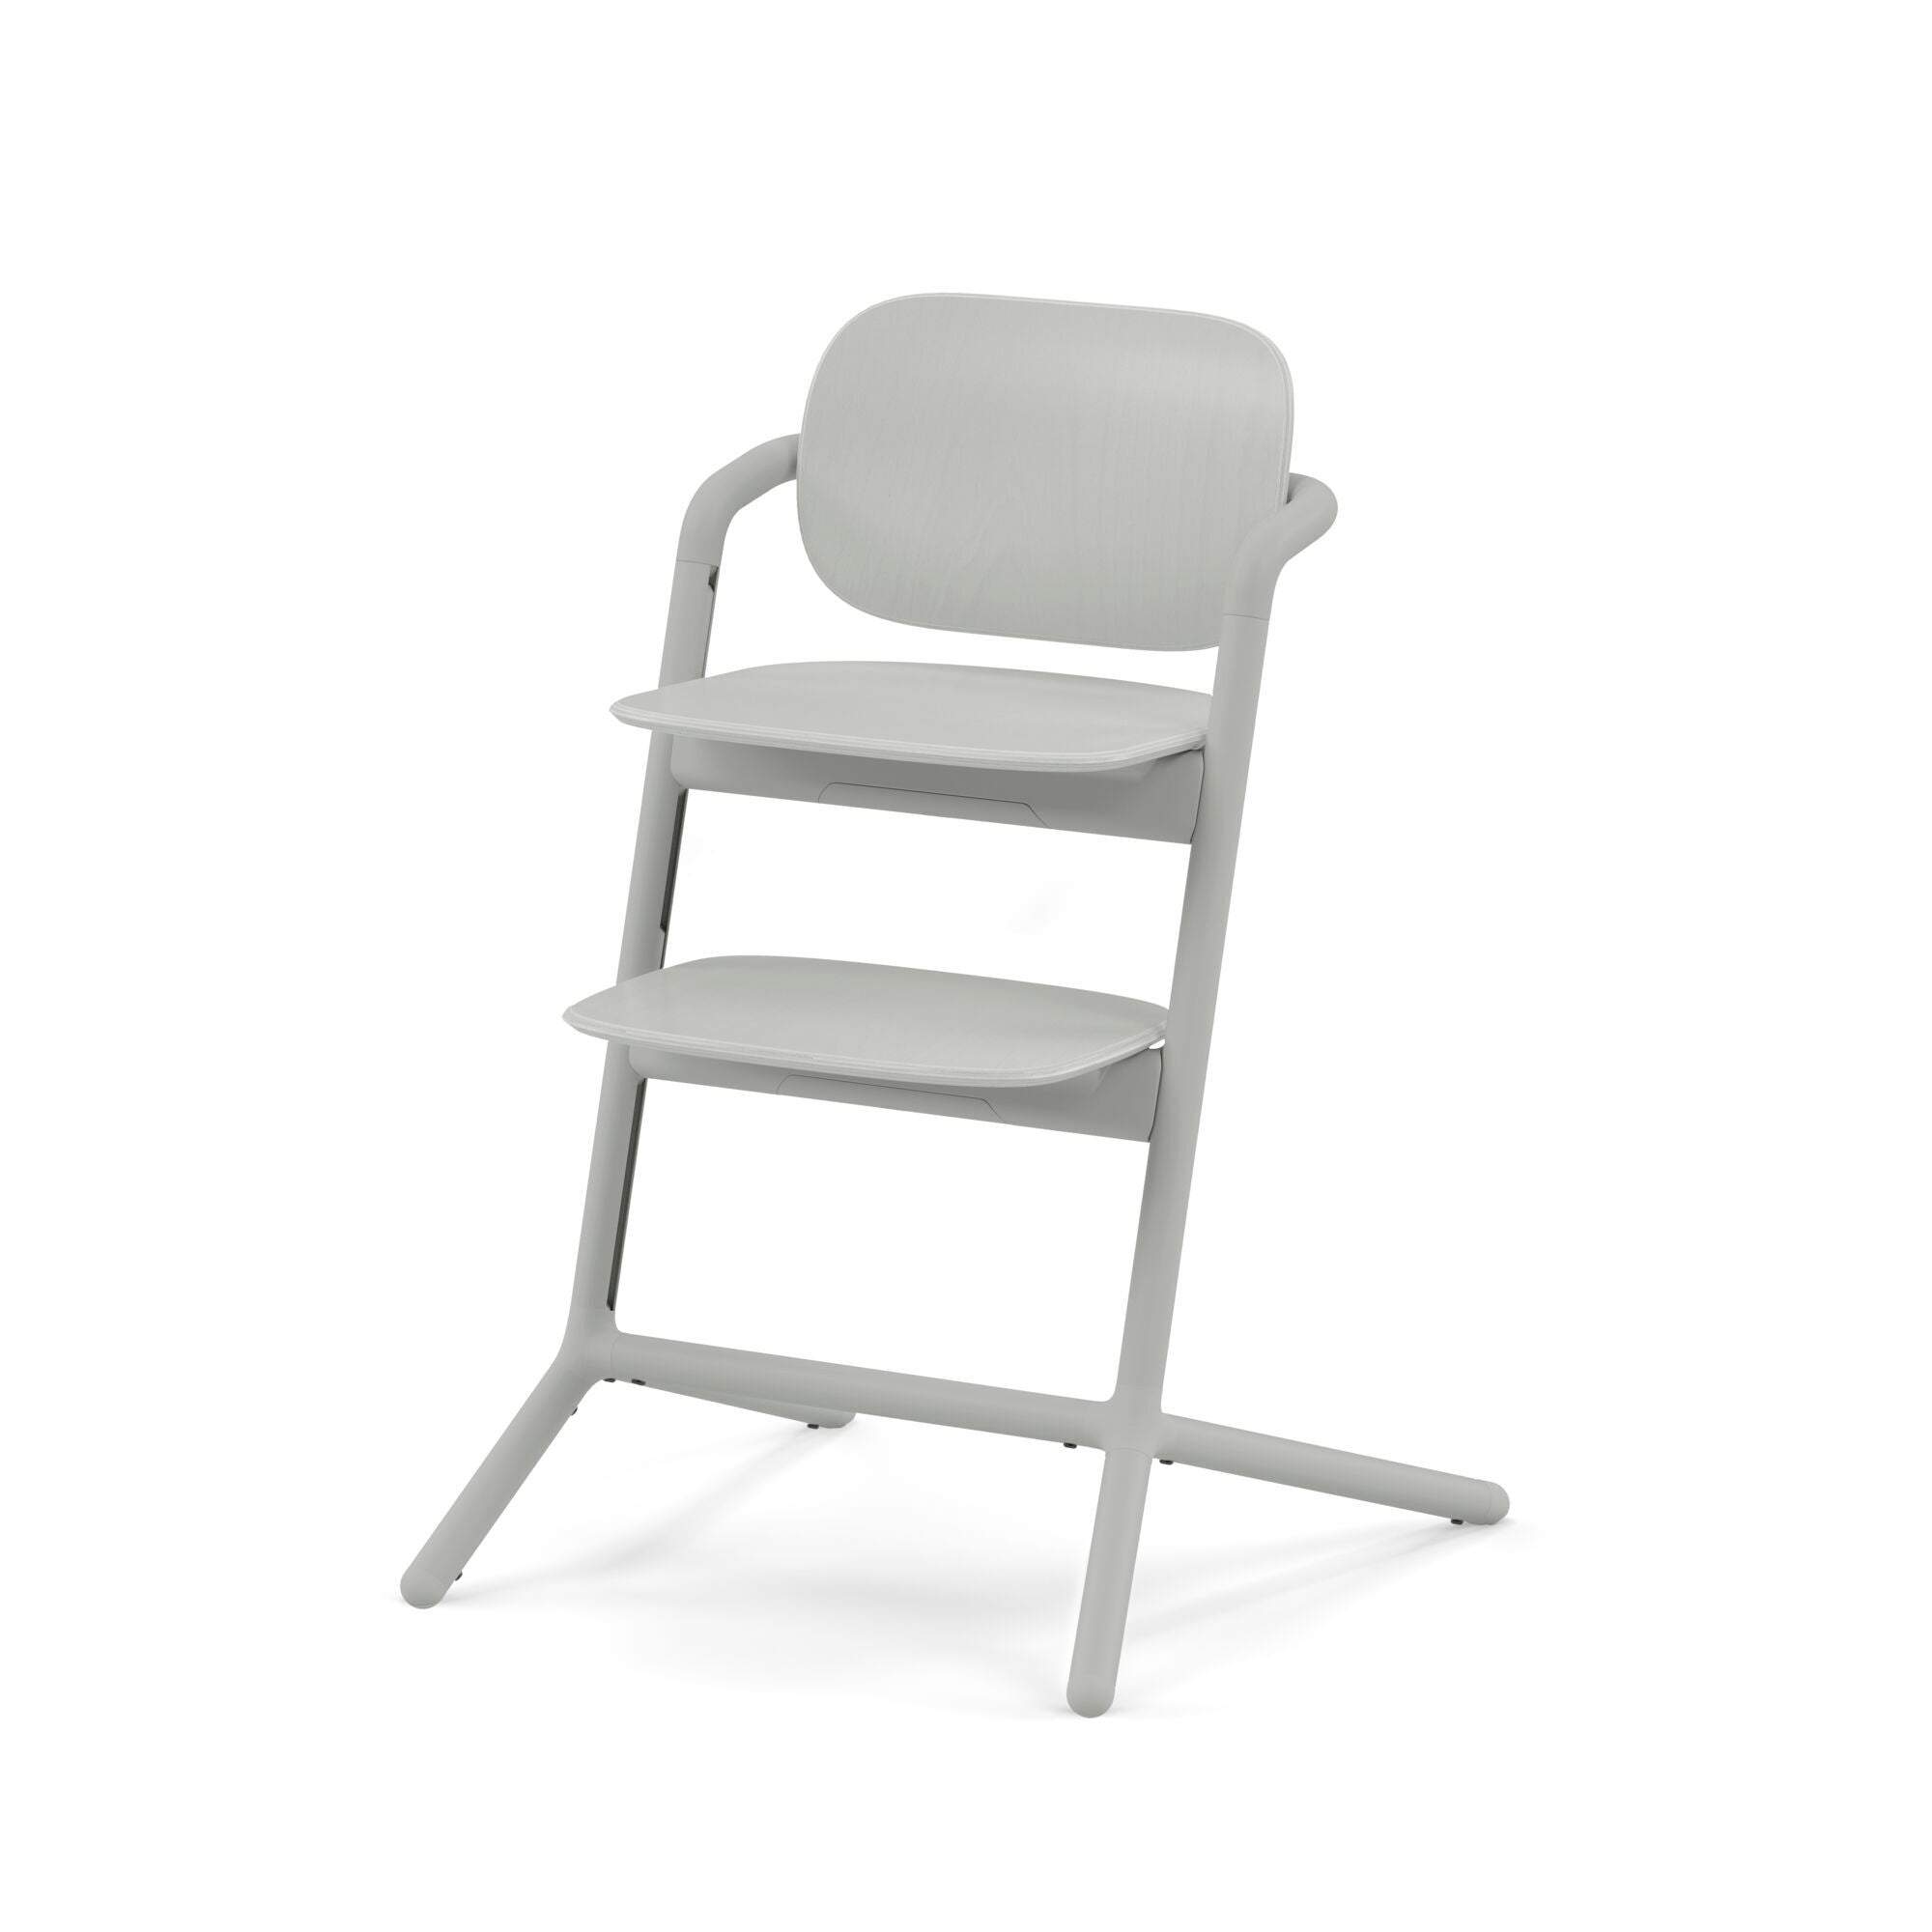 Cybex LEMO 2 High Chair - Sand White